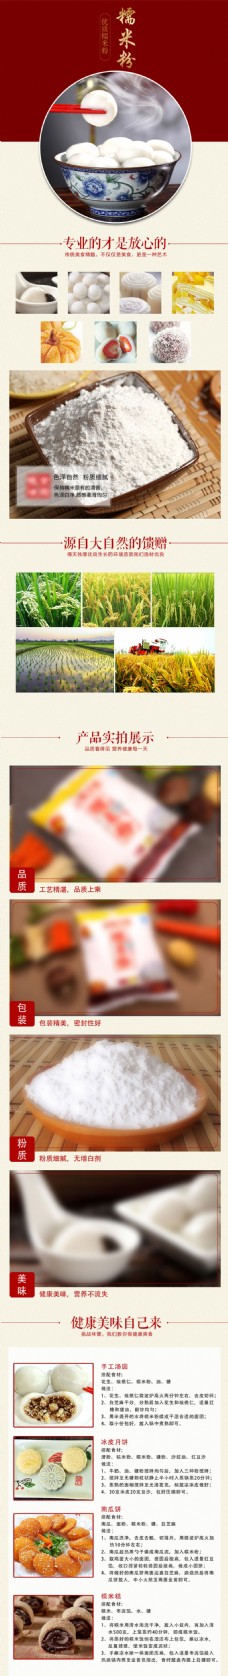 中国风红色食品糯米面汤圆淘宝详情页设计